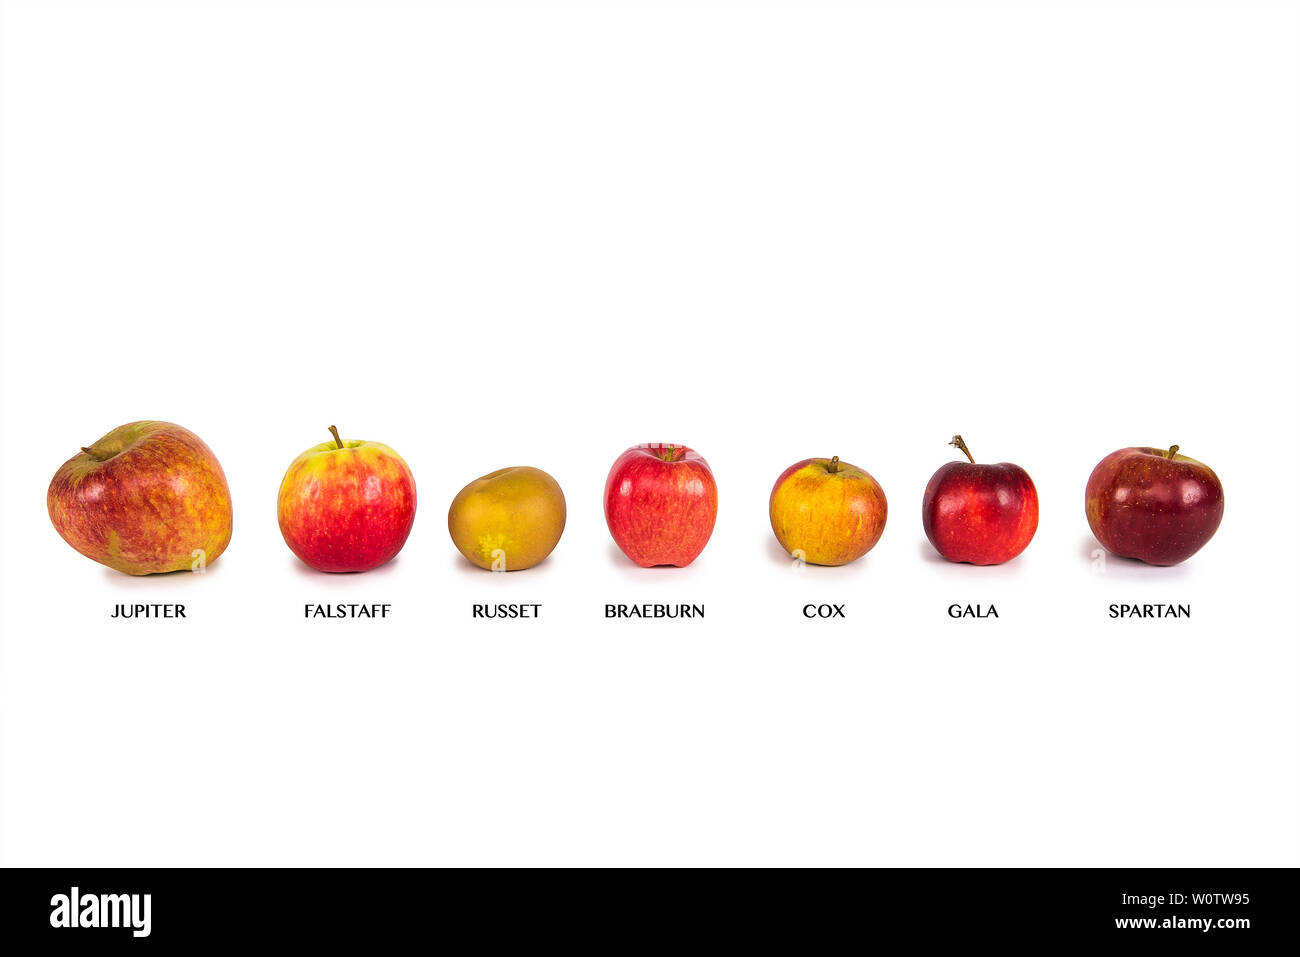 Sept différentes pommes sur un fond blanc avec des étiquettes Banque D'Images